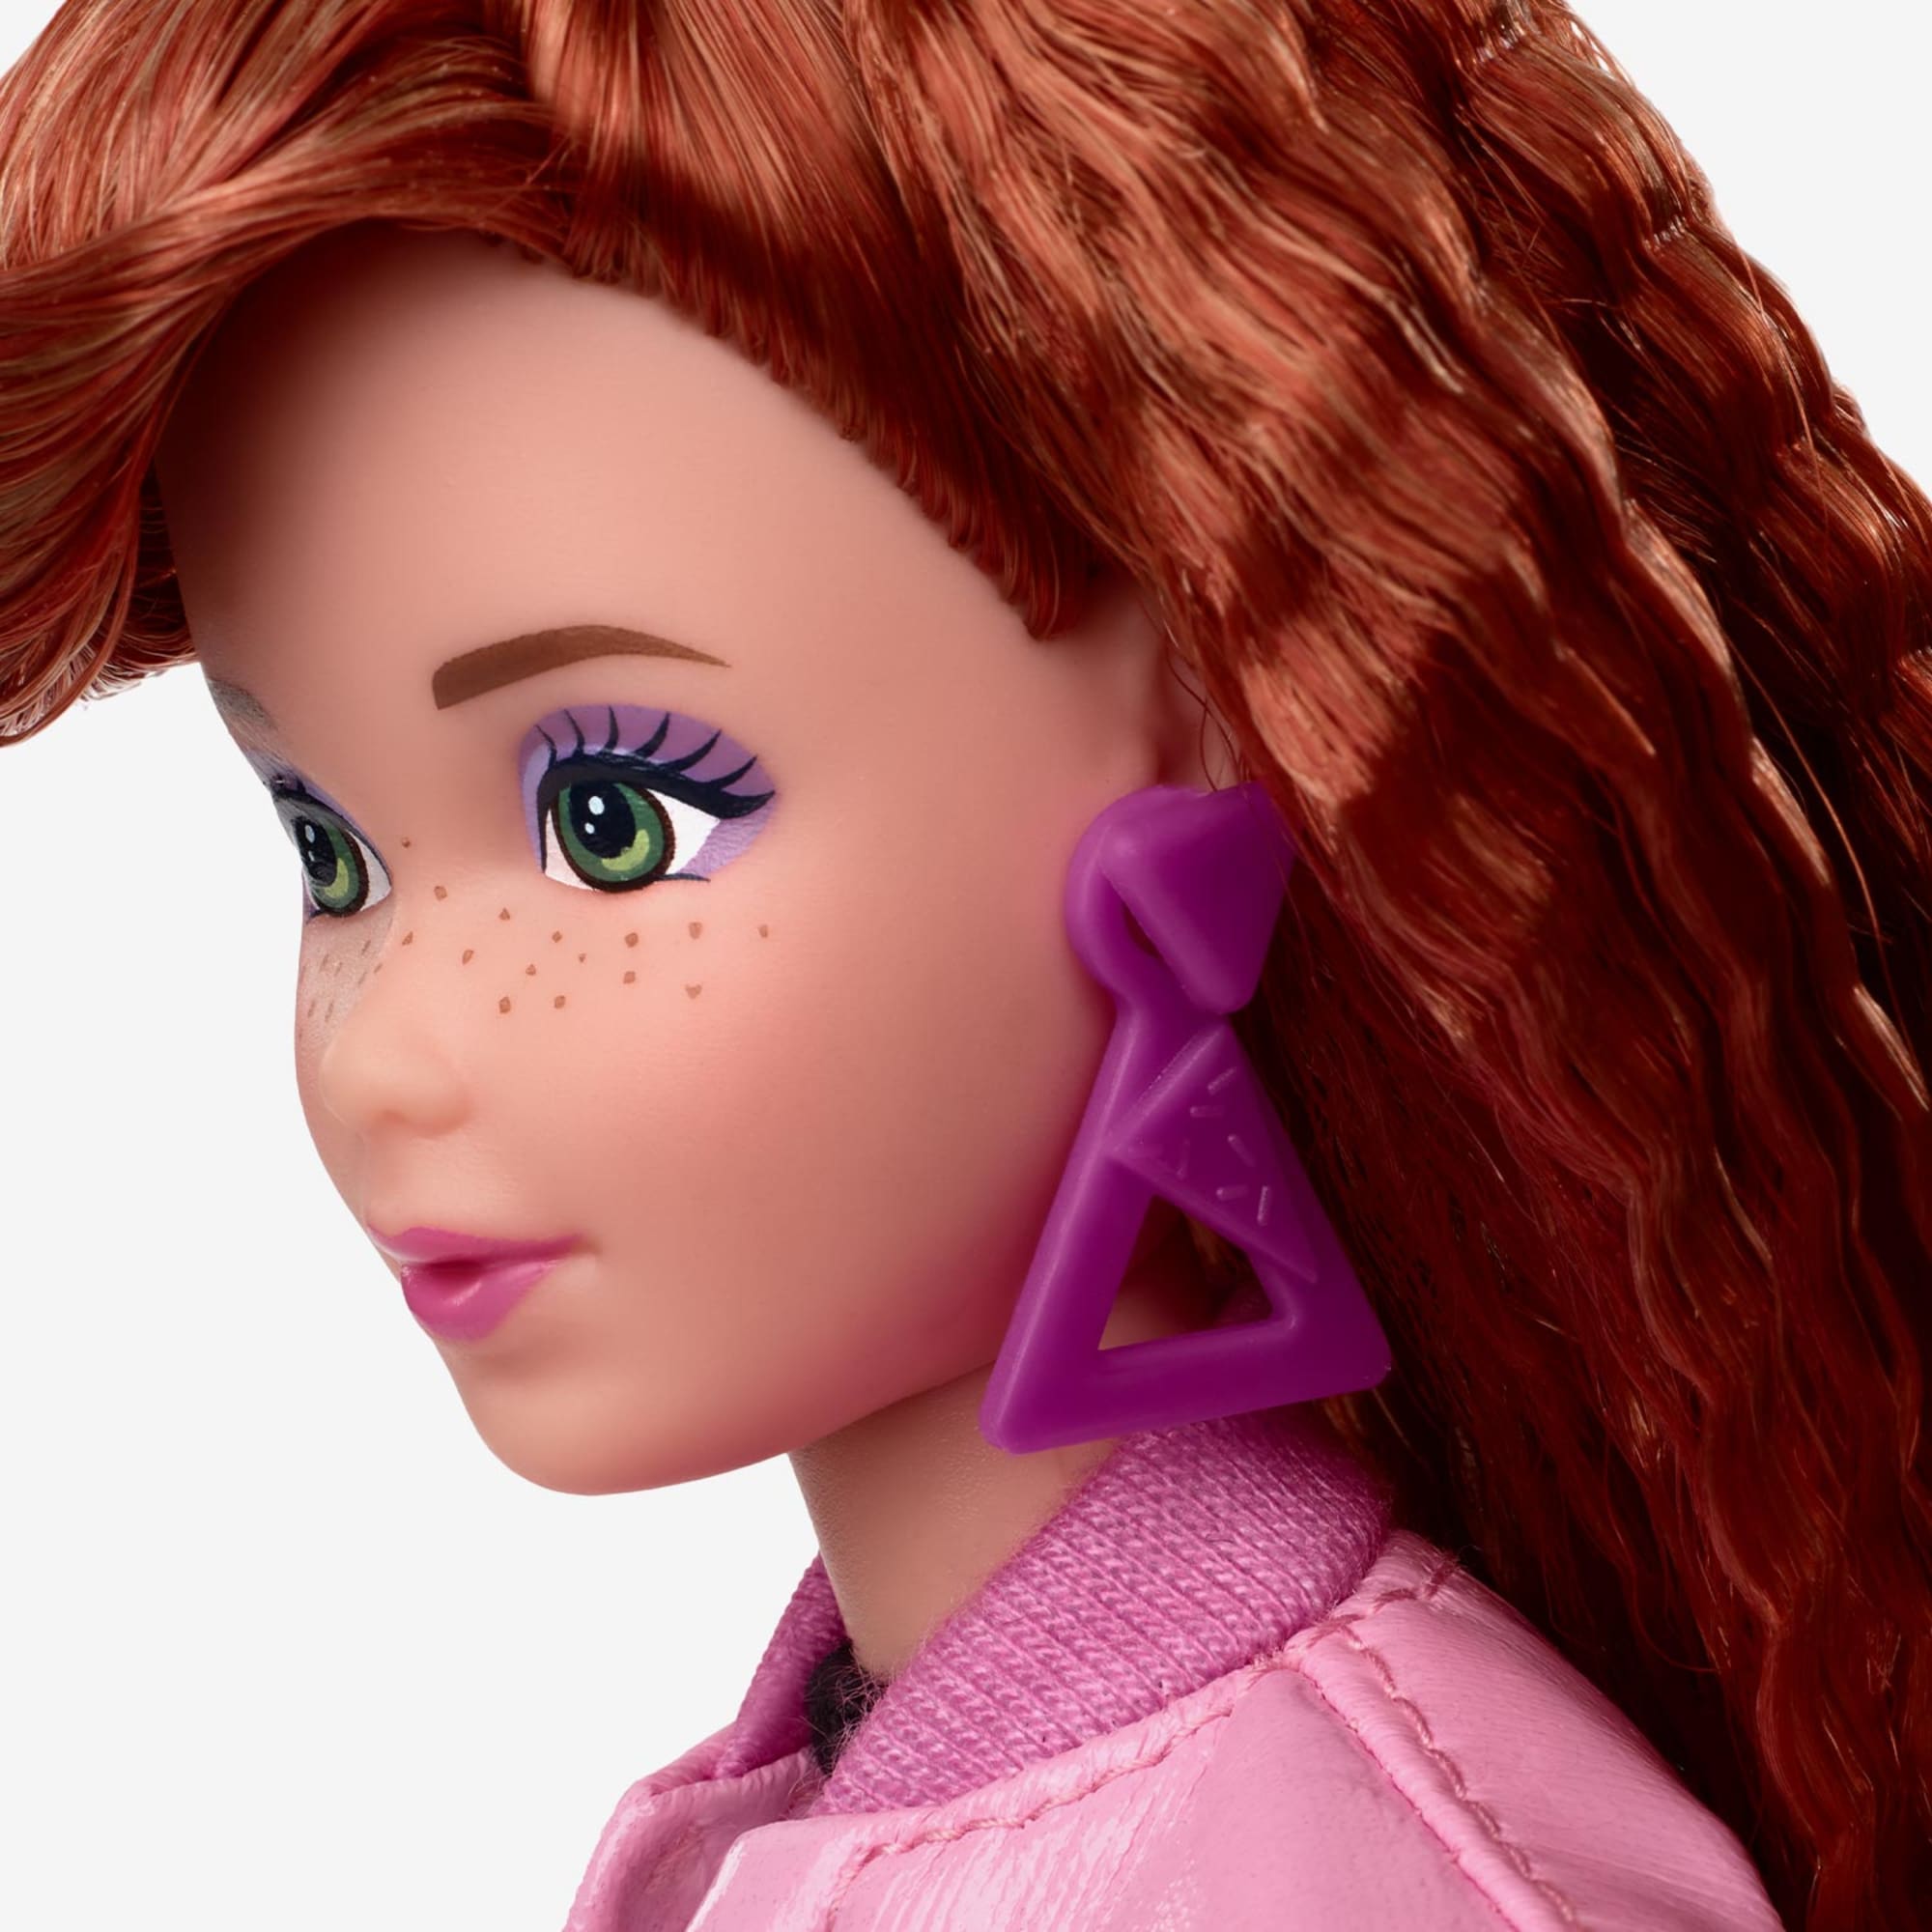 Barbie Rewind Doll – Schoolin' Around